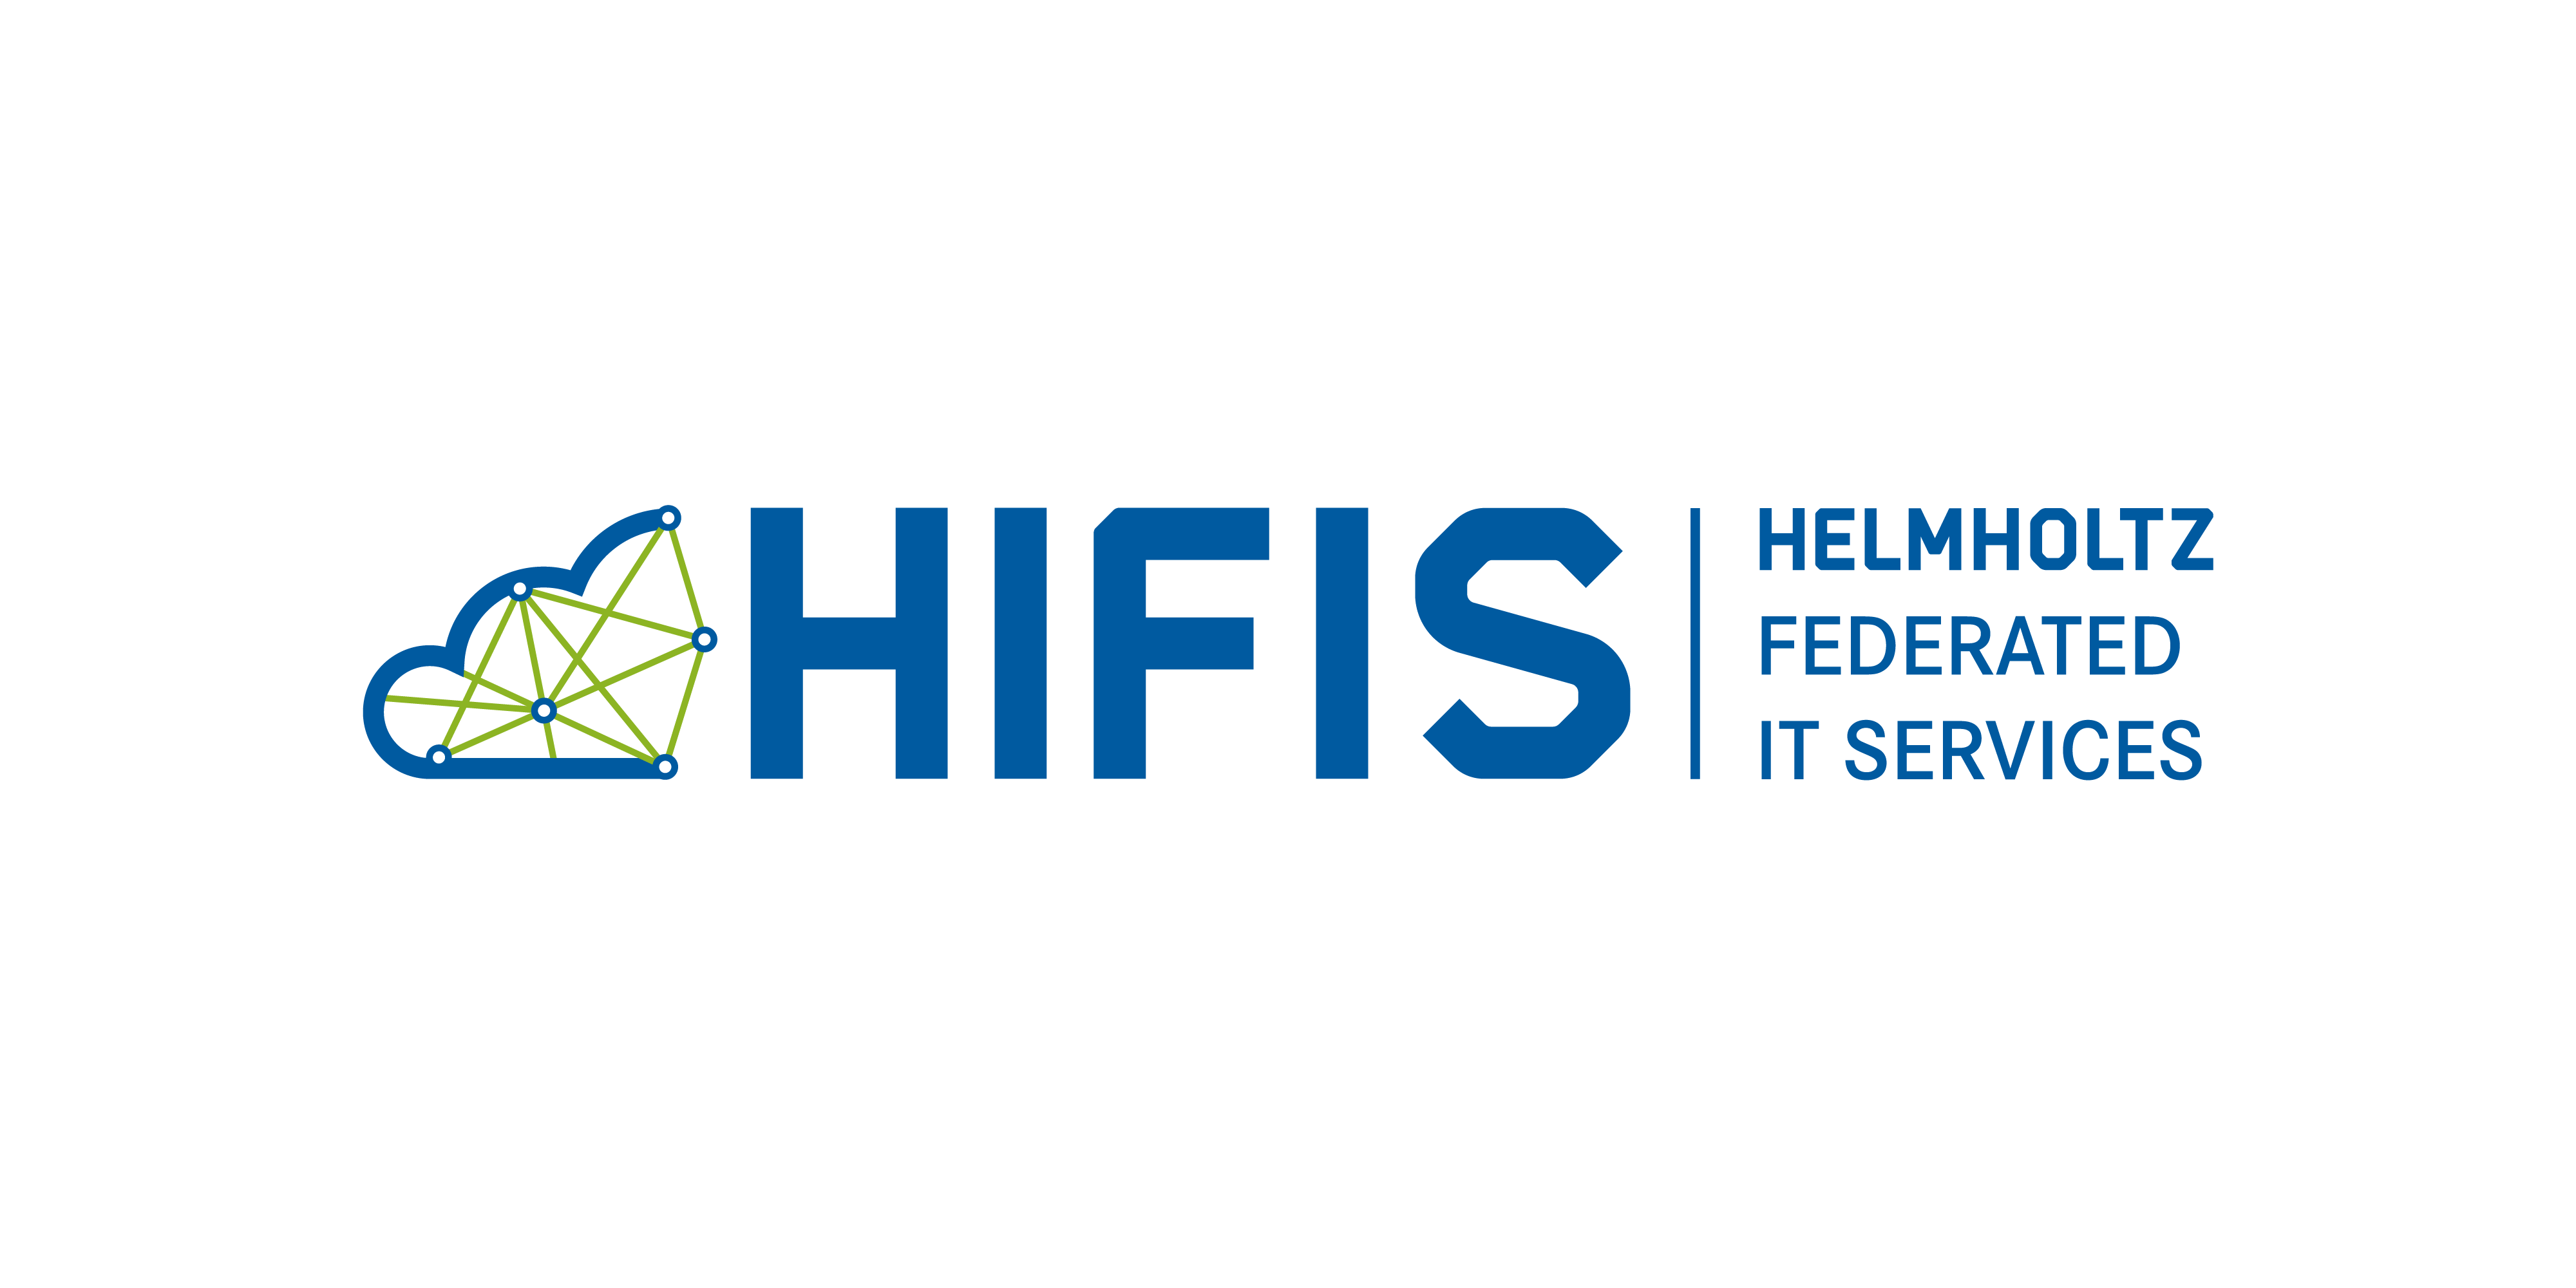 HIFIS Logo